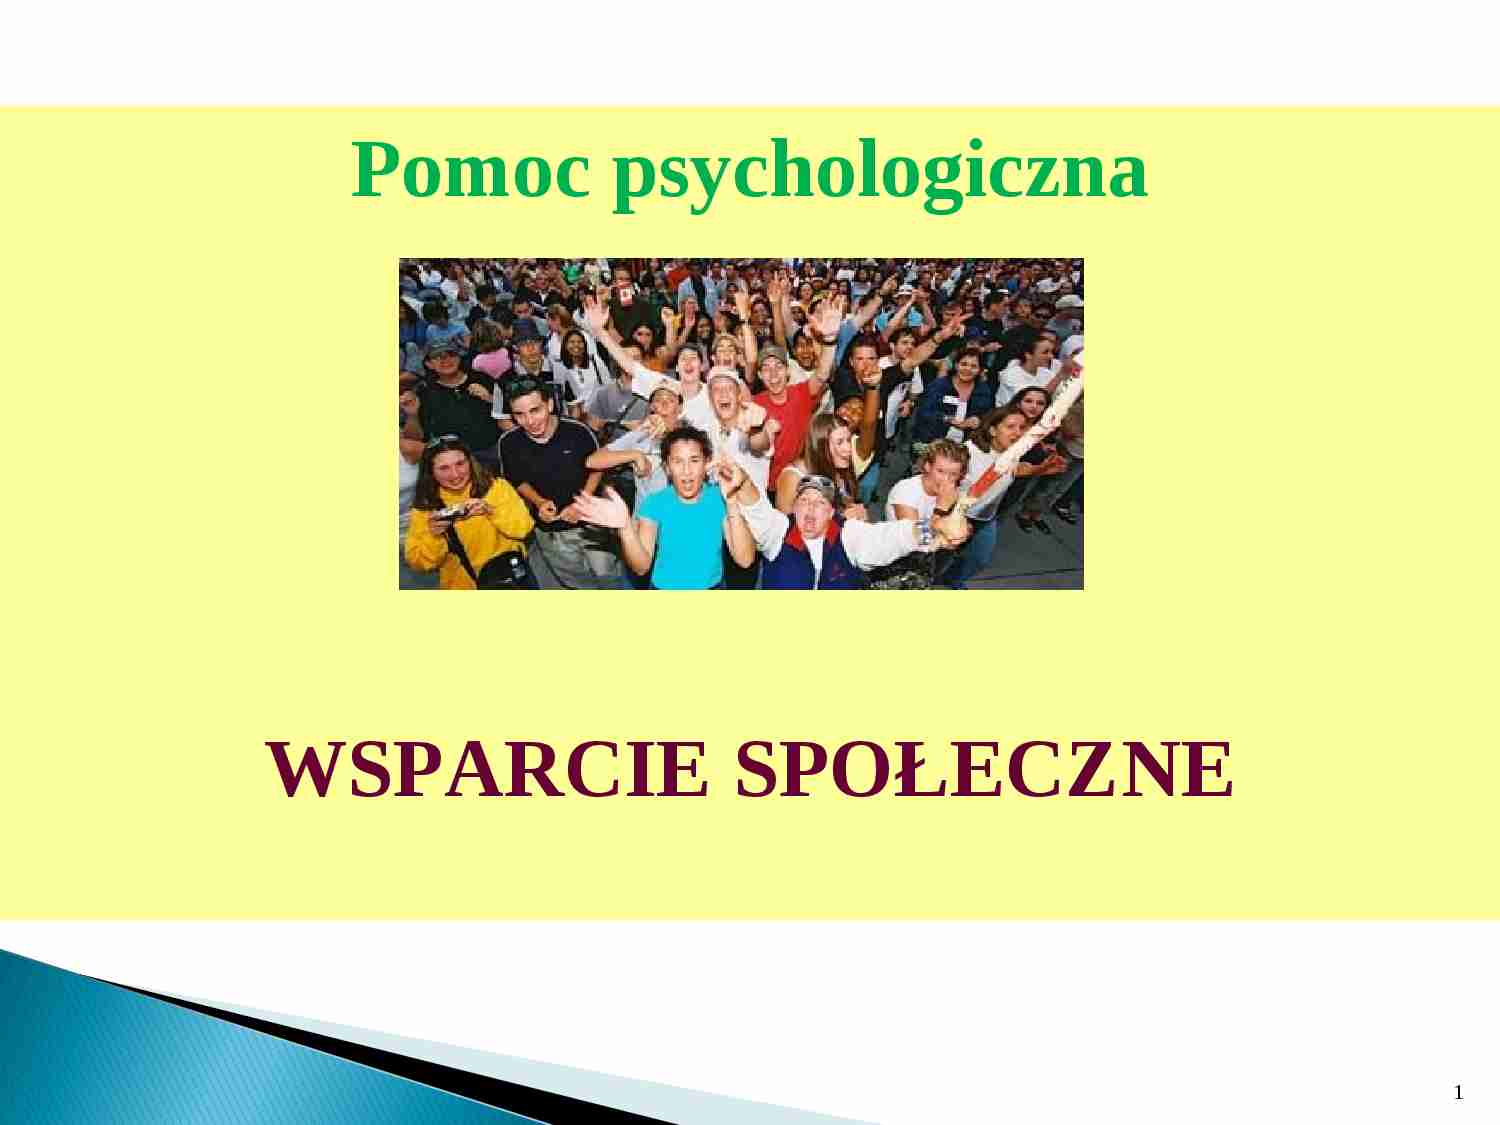 Pomoc psychologiczna-wsparcie społeczne - strona 1